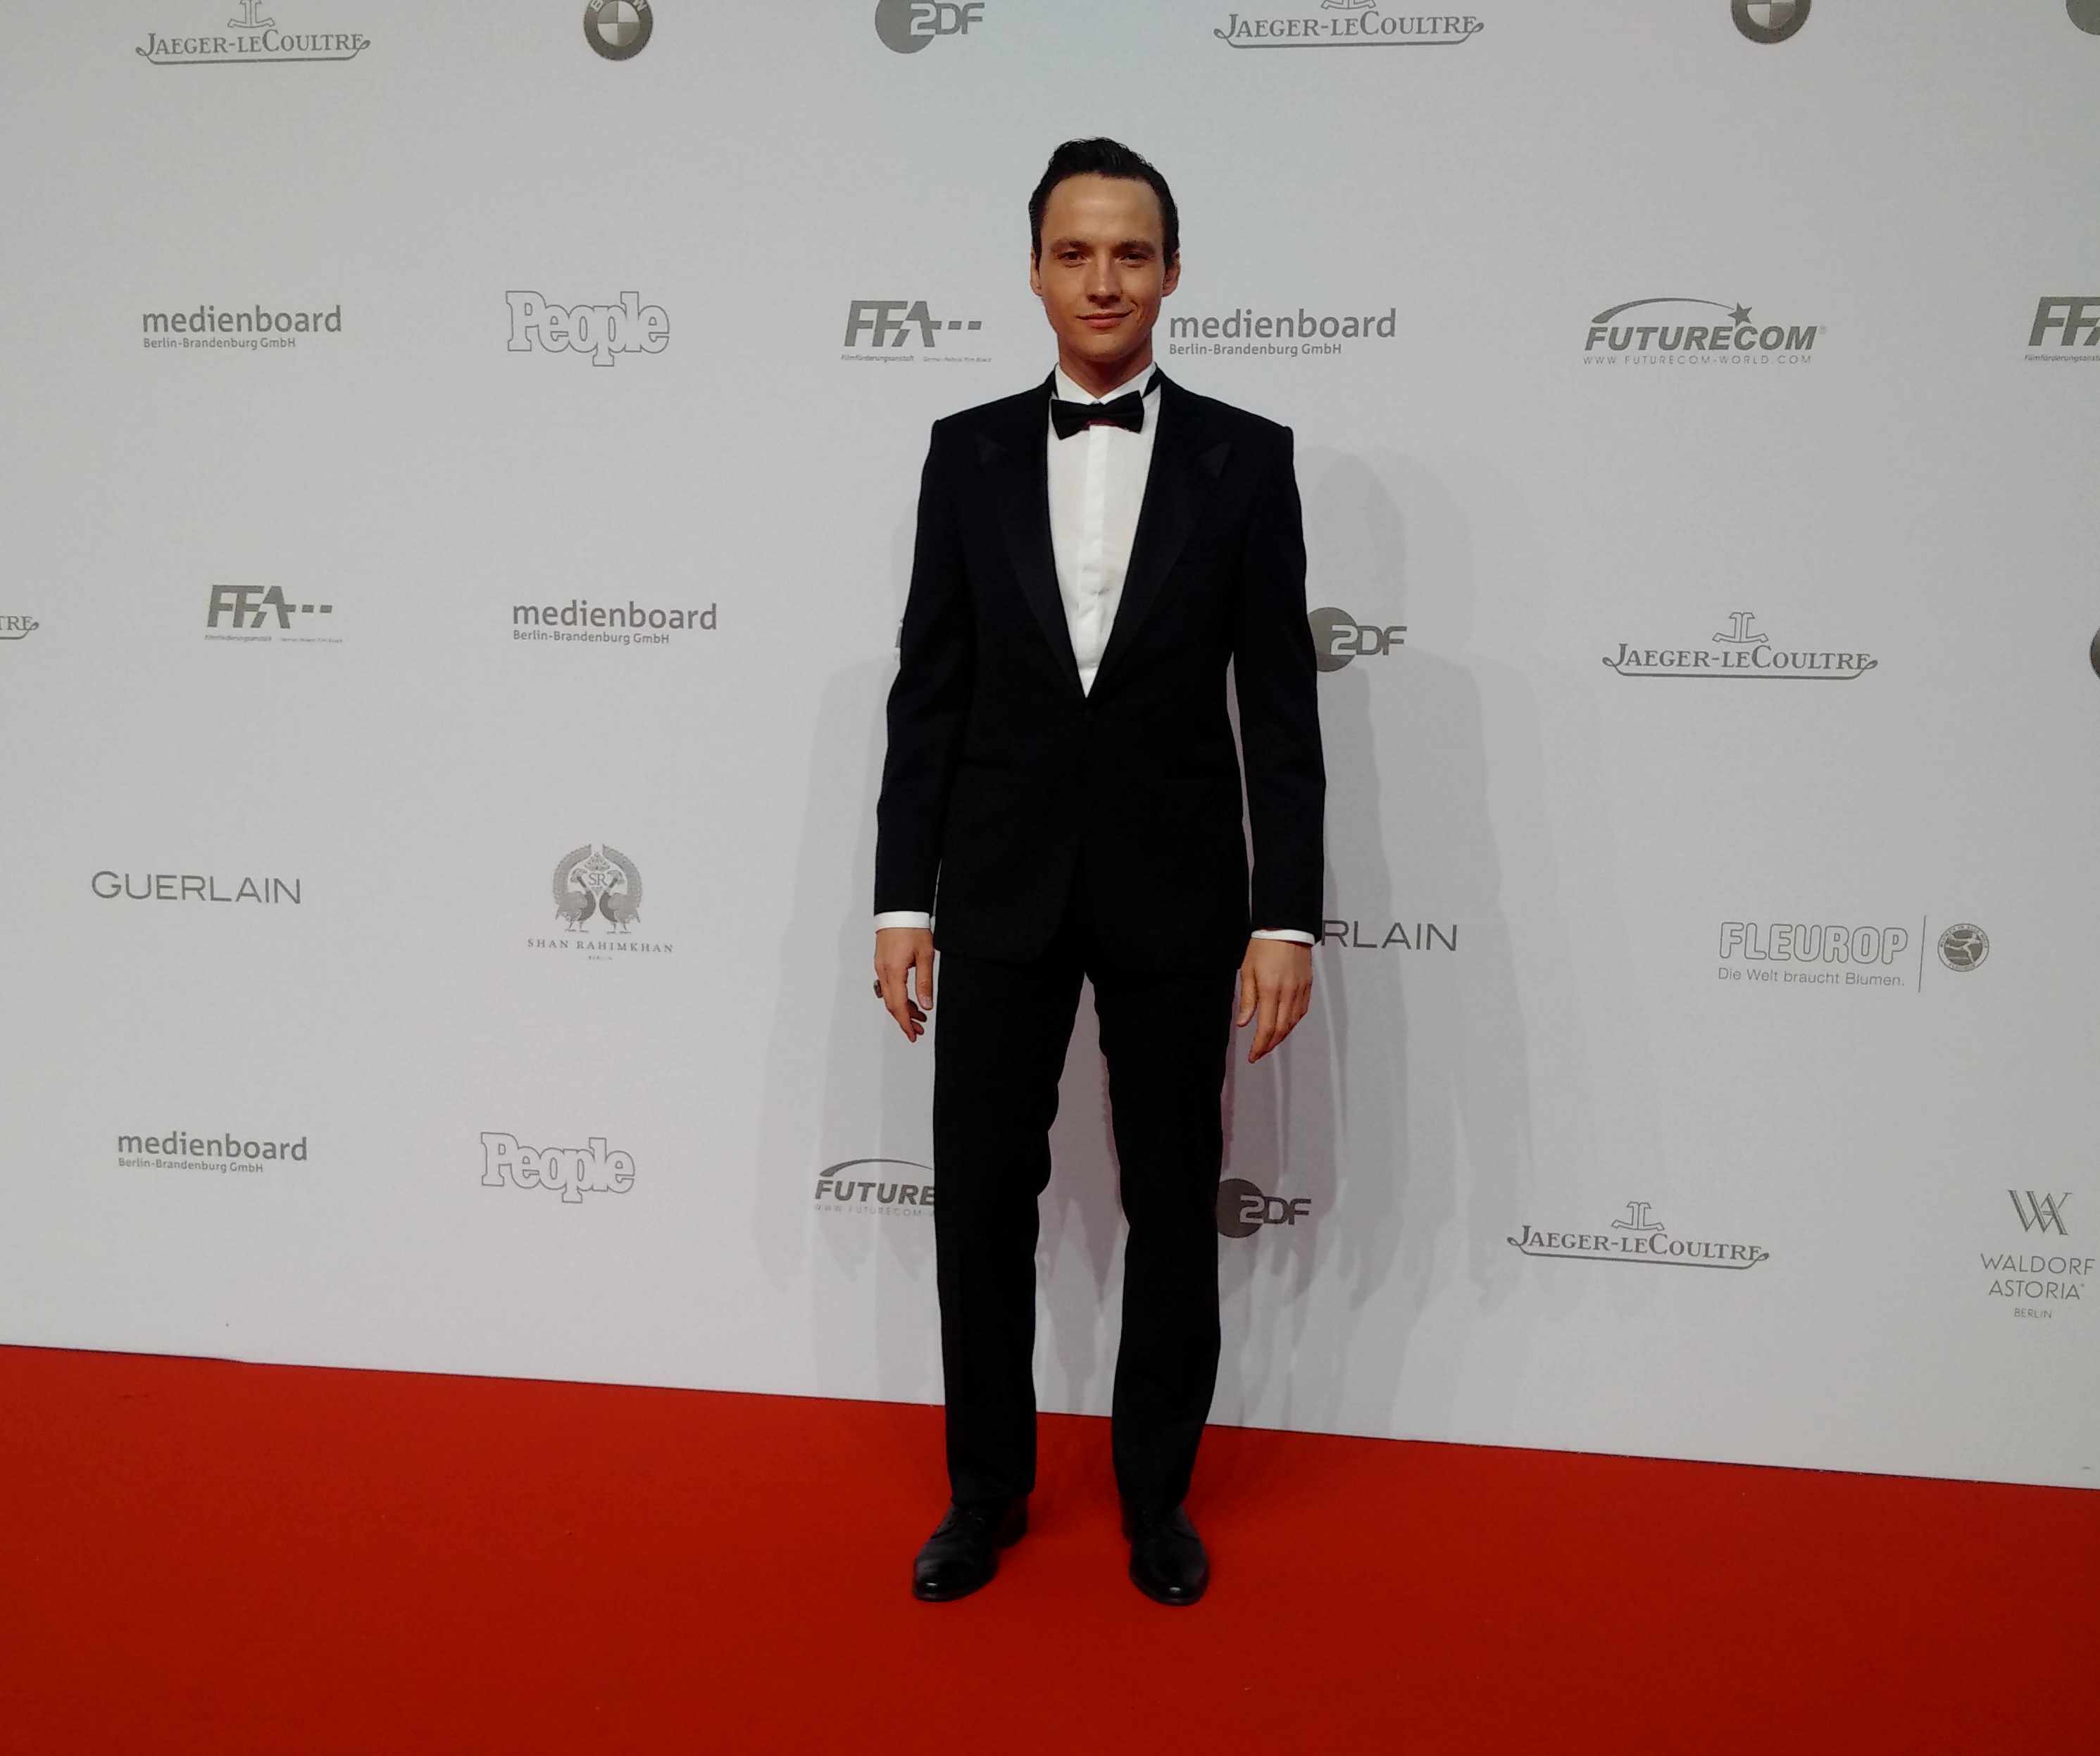 Ralph Kretschmar attending the German Film Academy Awards 2015.